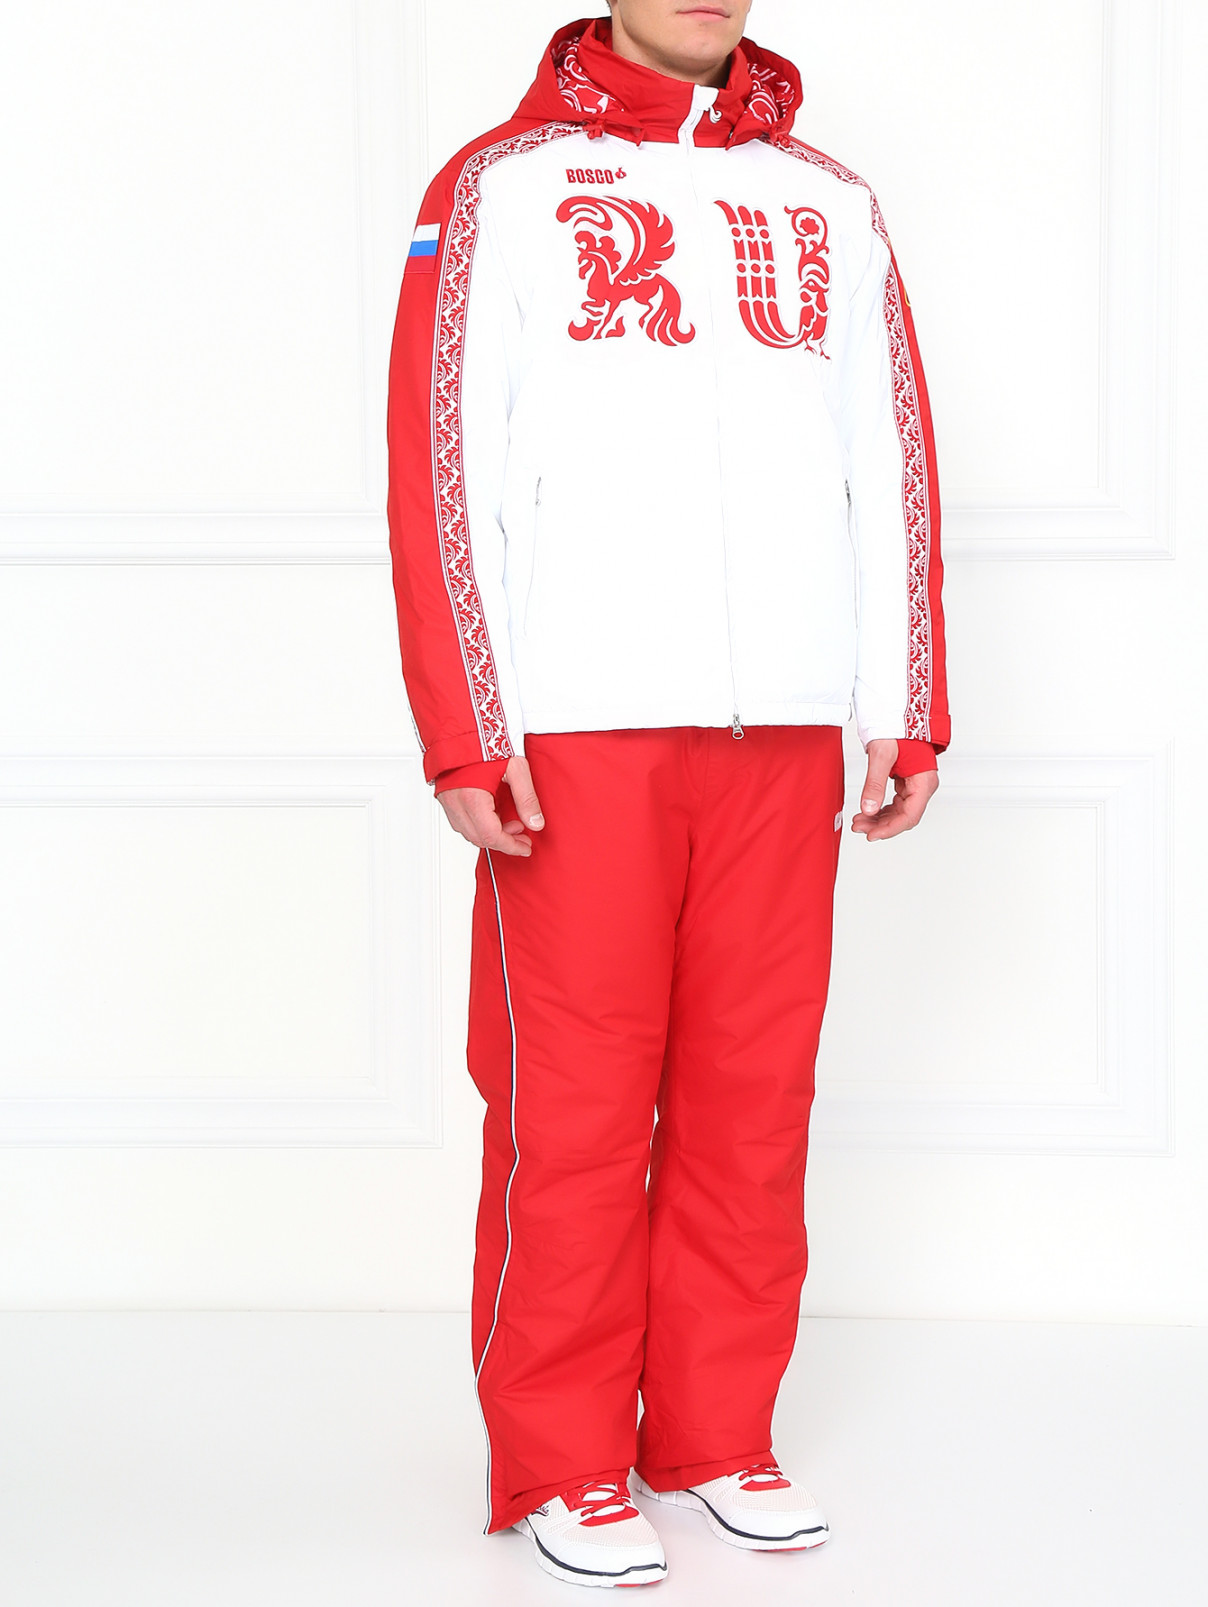 Лыжные брюки на резинке BOSCO  –  Модель Общий вид  – Цвет:  Красный